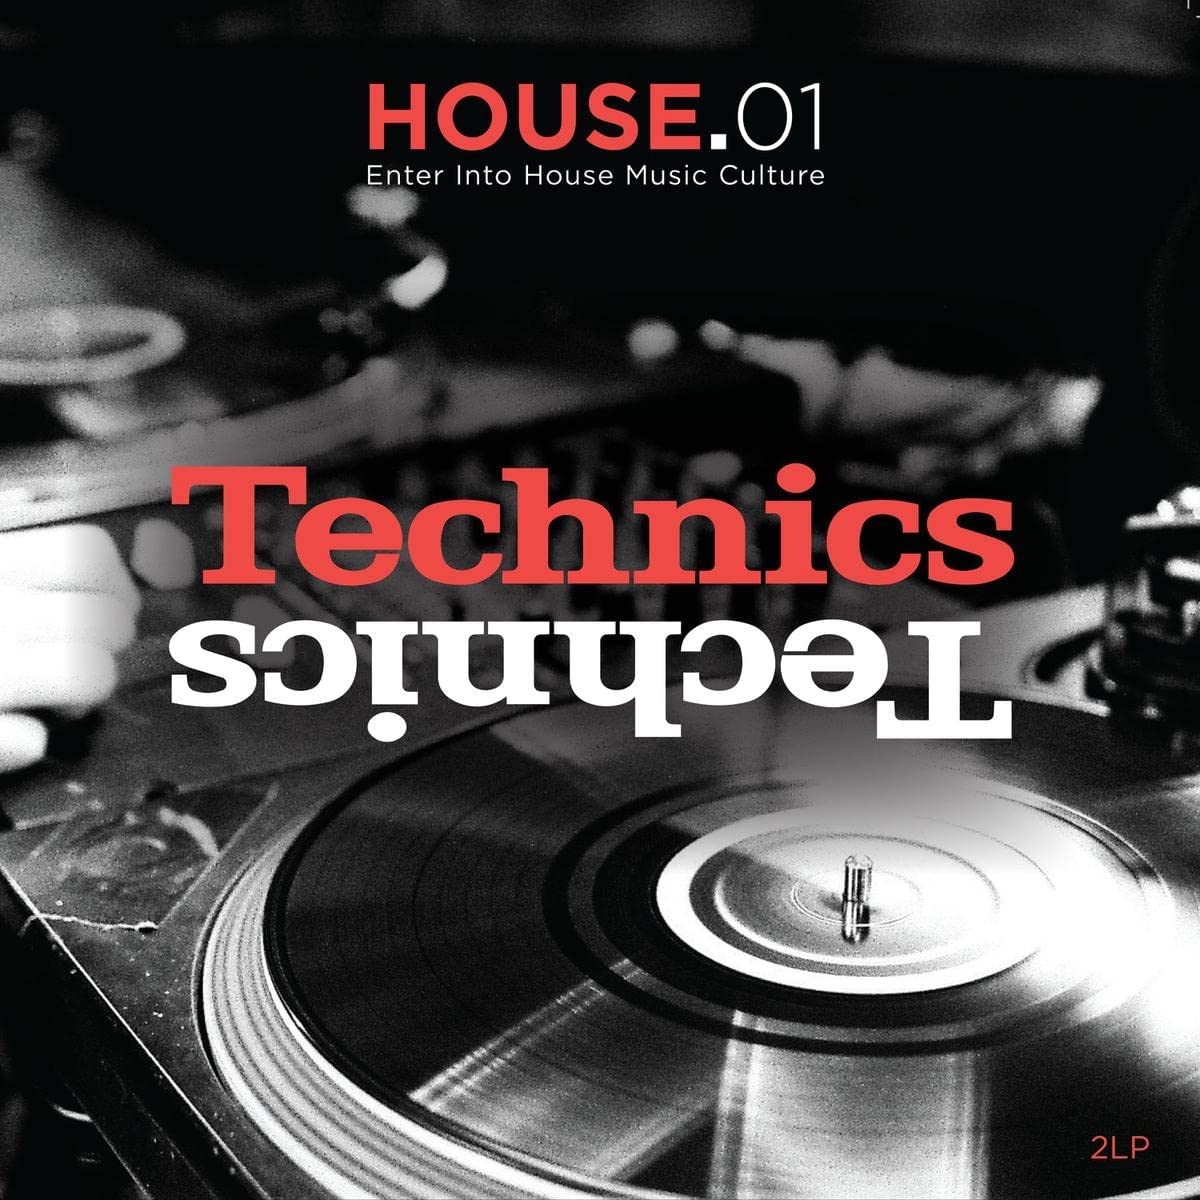 Technics - House 01 (Enter Into House Music Culture) (2LP)